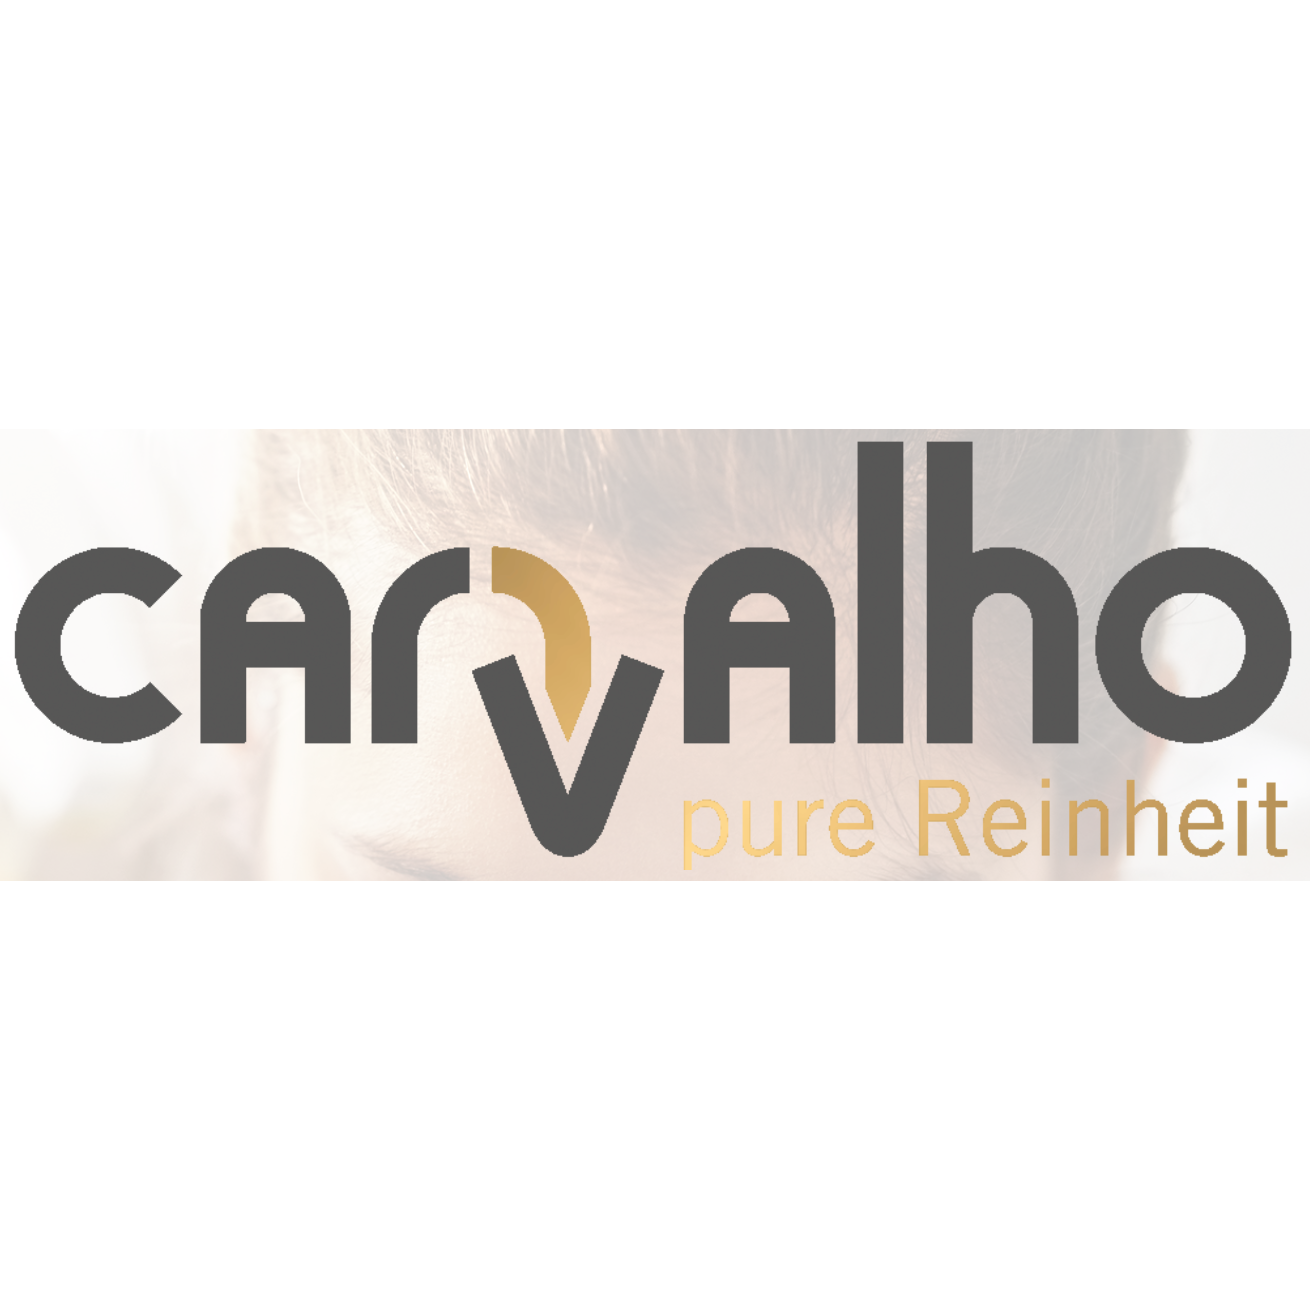 CARVALHO Pure Reinheit Logo